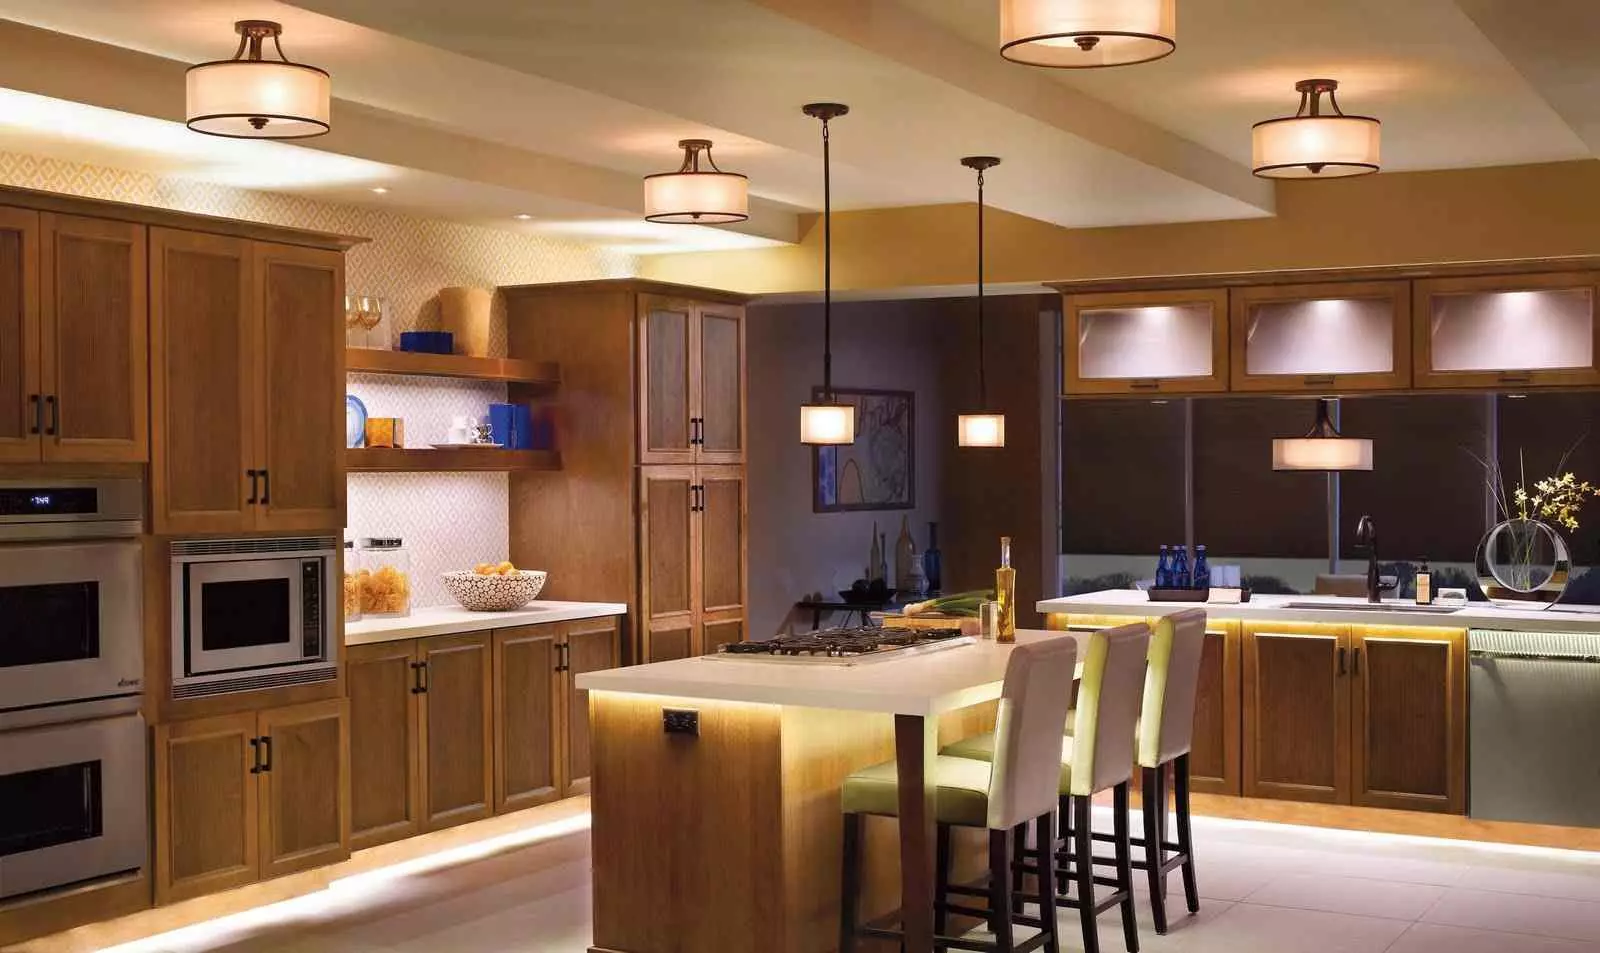 Como criar um interior de cozinha em um estilo moderno para uma grande família